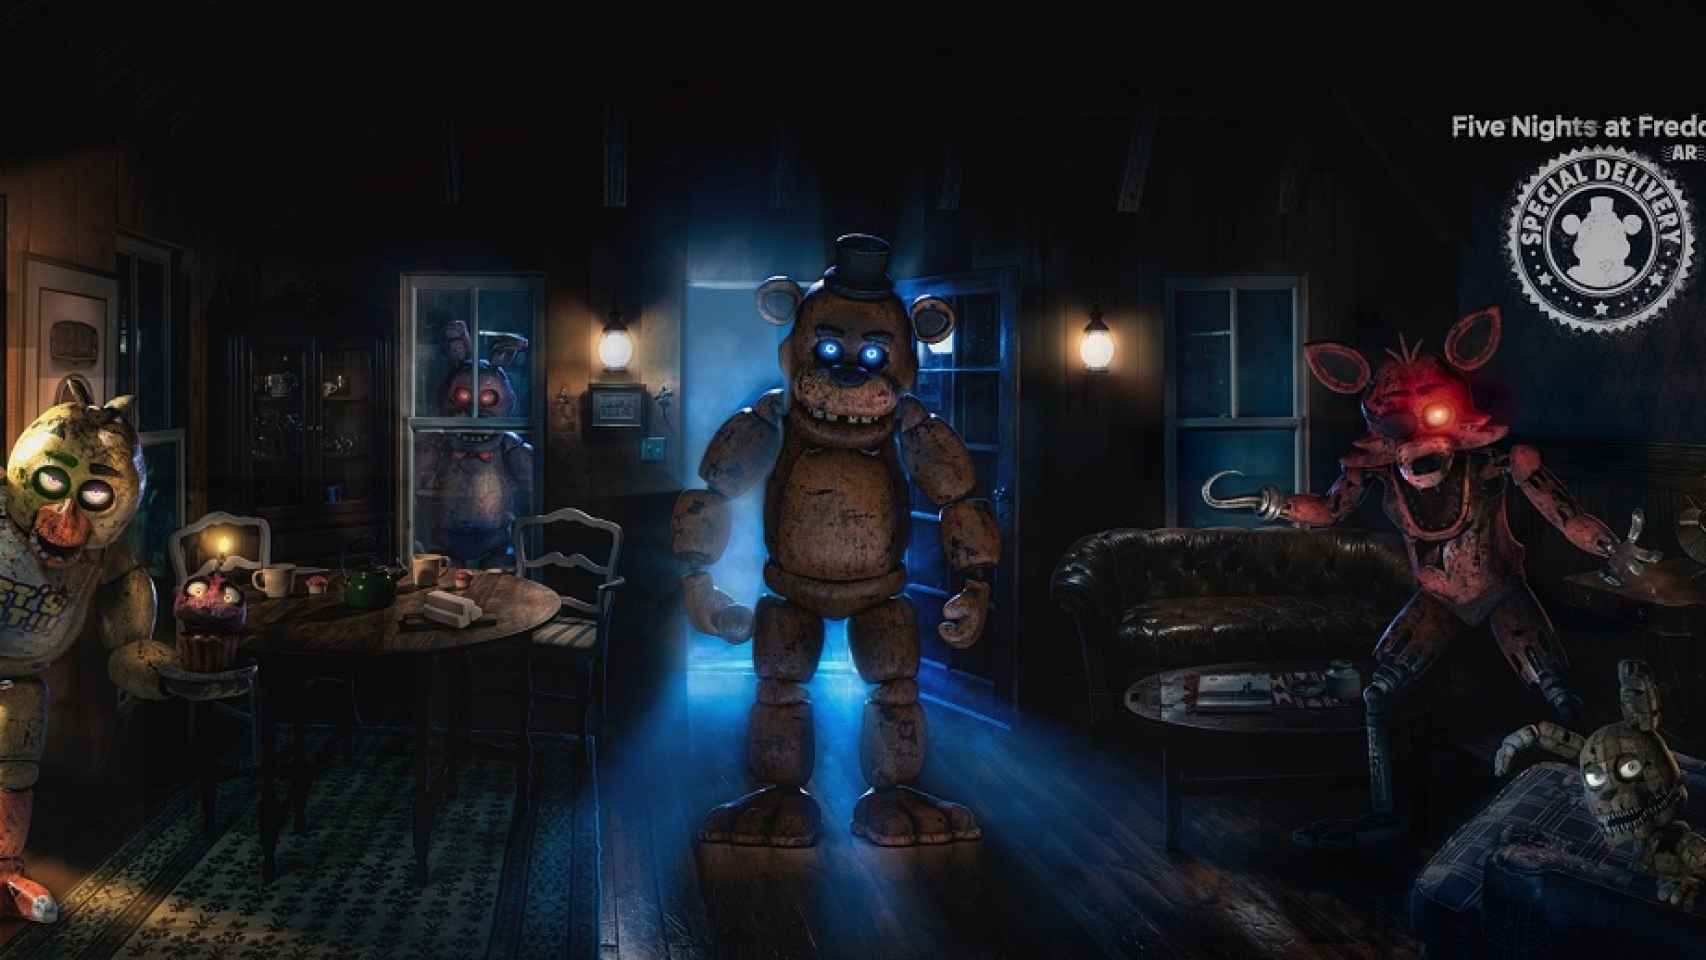 La versión de realidad aumentada de Five Nights at Freddy’s llega a Android